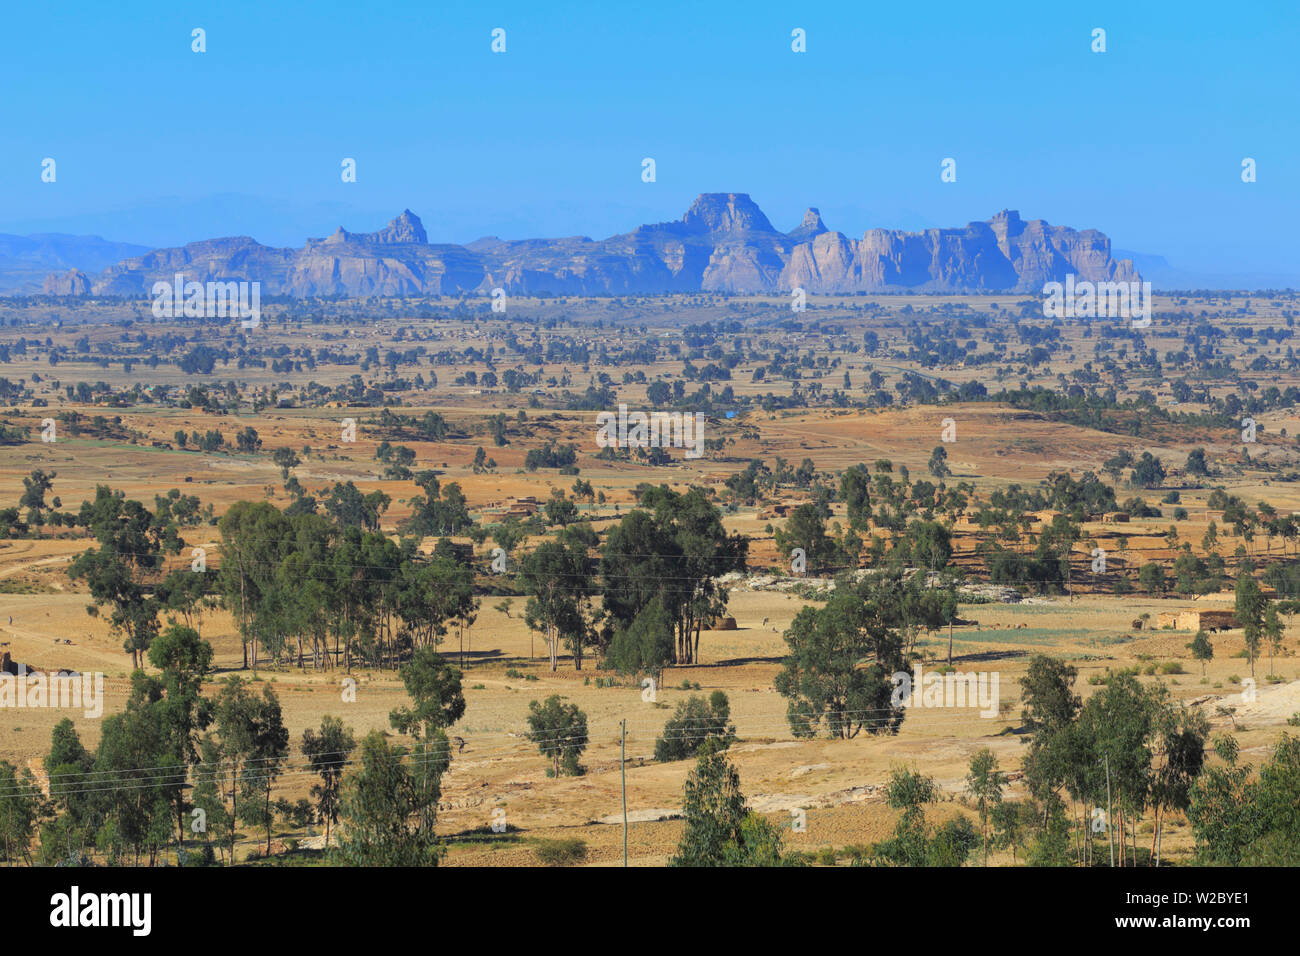 Gheralta mountains, Adigrat, Tigray region, Ethiopia Stock Photo